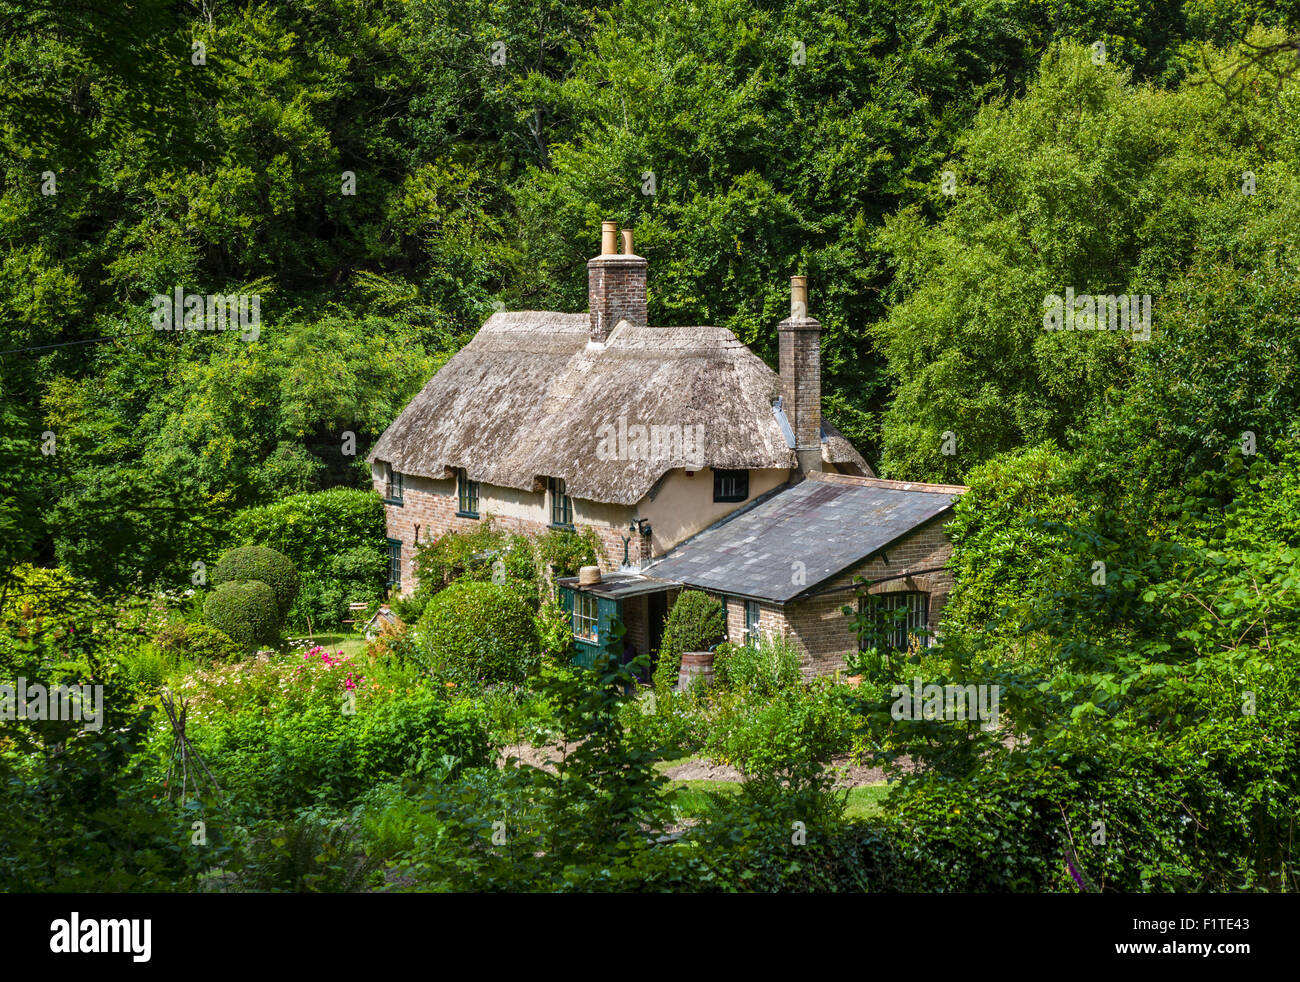 Hardy's Cottage, birthplace of writer Thomas Hardy, Thorncombe Wood, Higher Bockhampton, near Dorchester, Dorset, England, UK Stock Photo